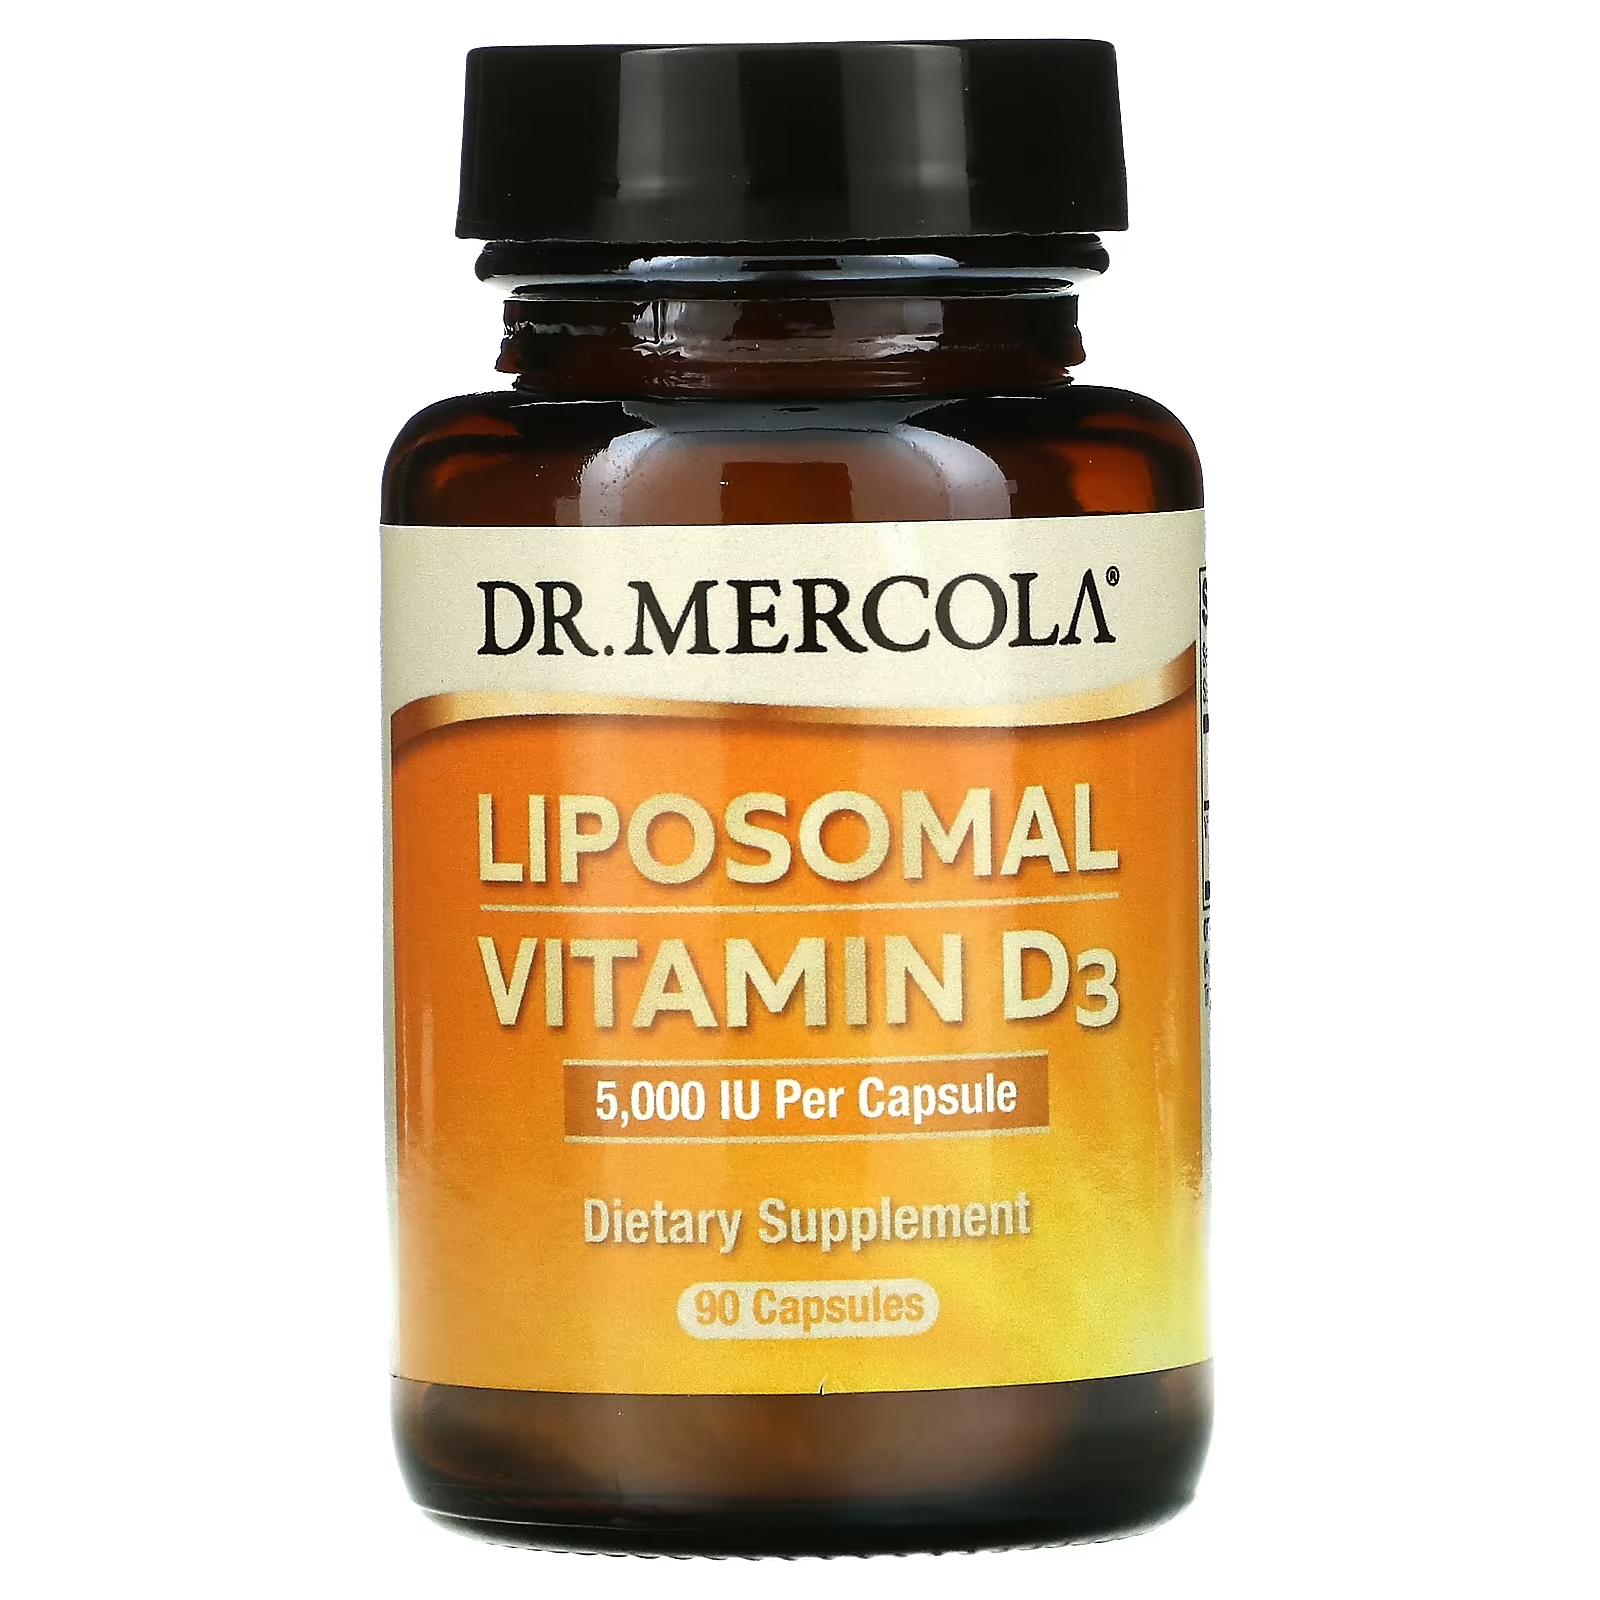 Dr. Mercola липосомальный витамин D3 5000 МЕ, 90 капсул dr mercola липосомальный витамин d3 1000 ме 30 капсул